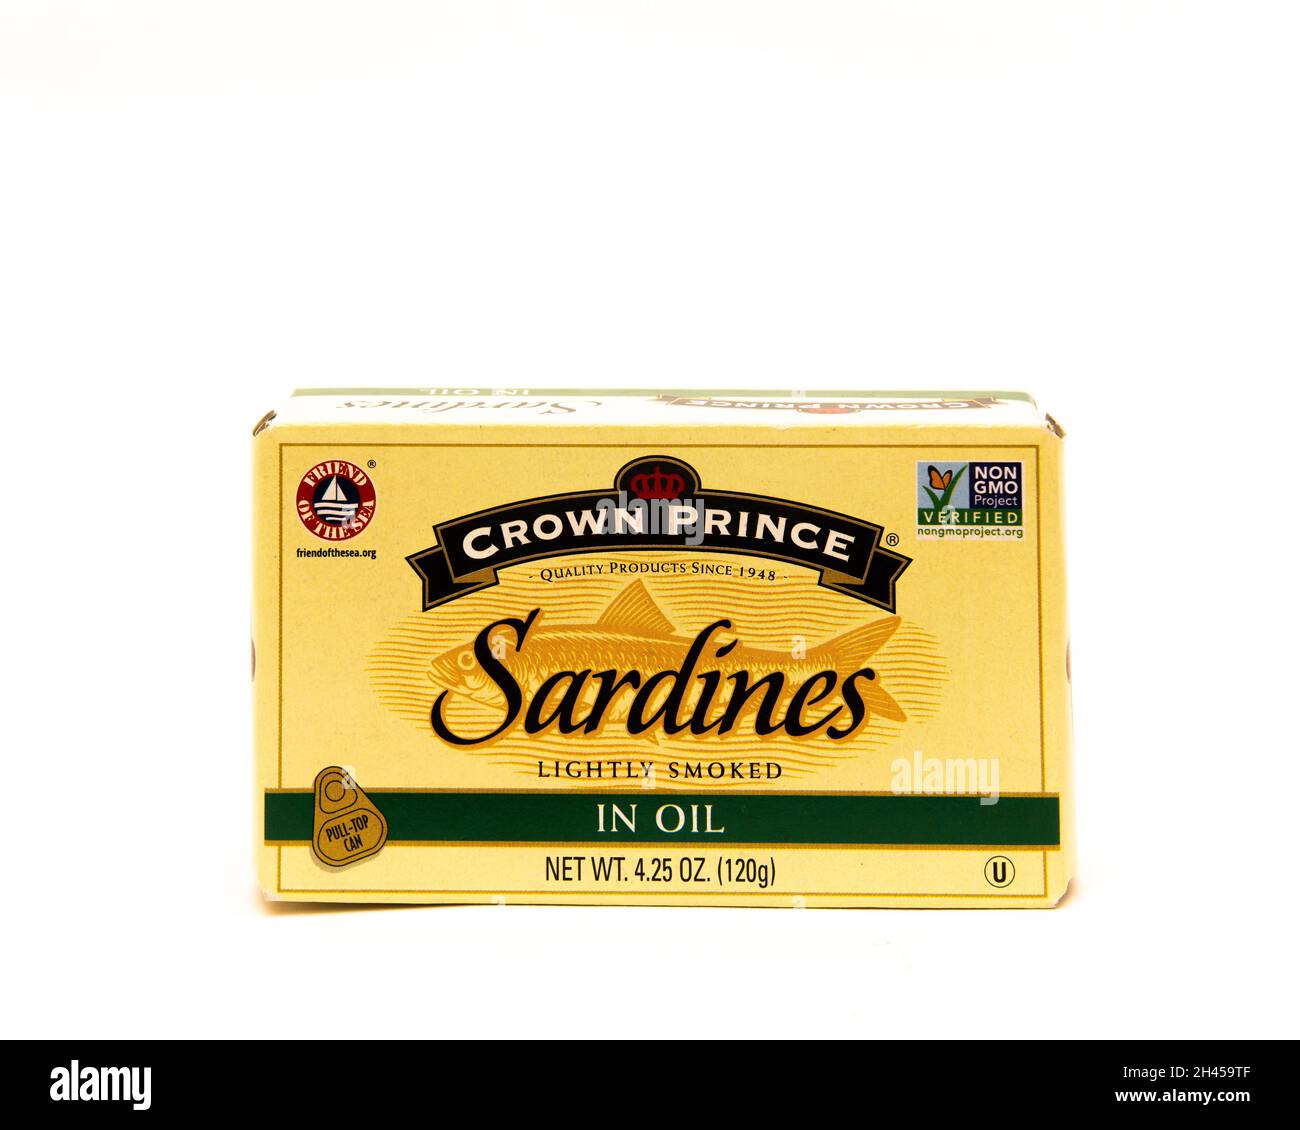 Eine Dose Kronprinz-Sardinen leicht geräuchert und in Sojabohnenöl verpackt, verpackt in einer blauen Schachtel. Stockfoto